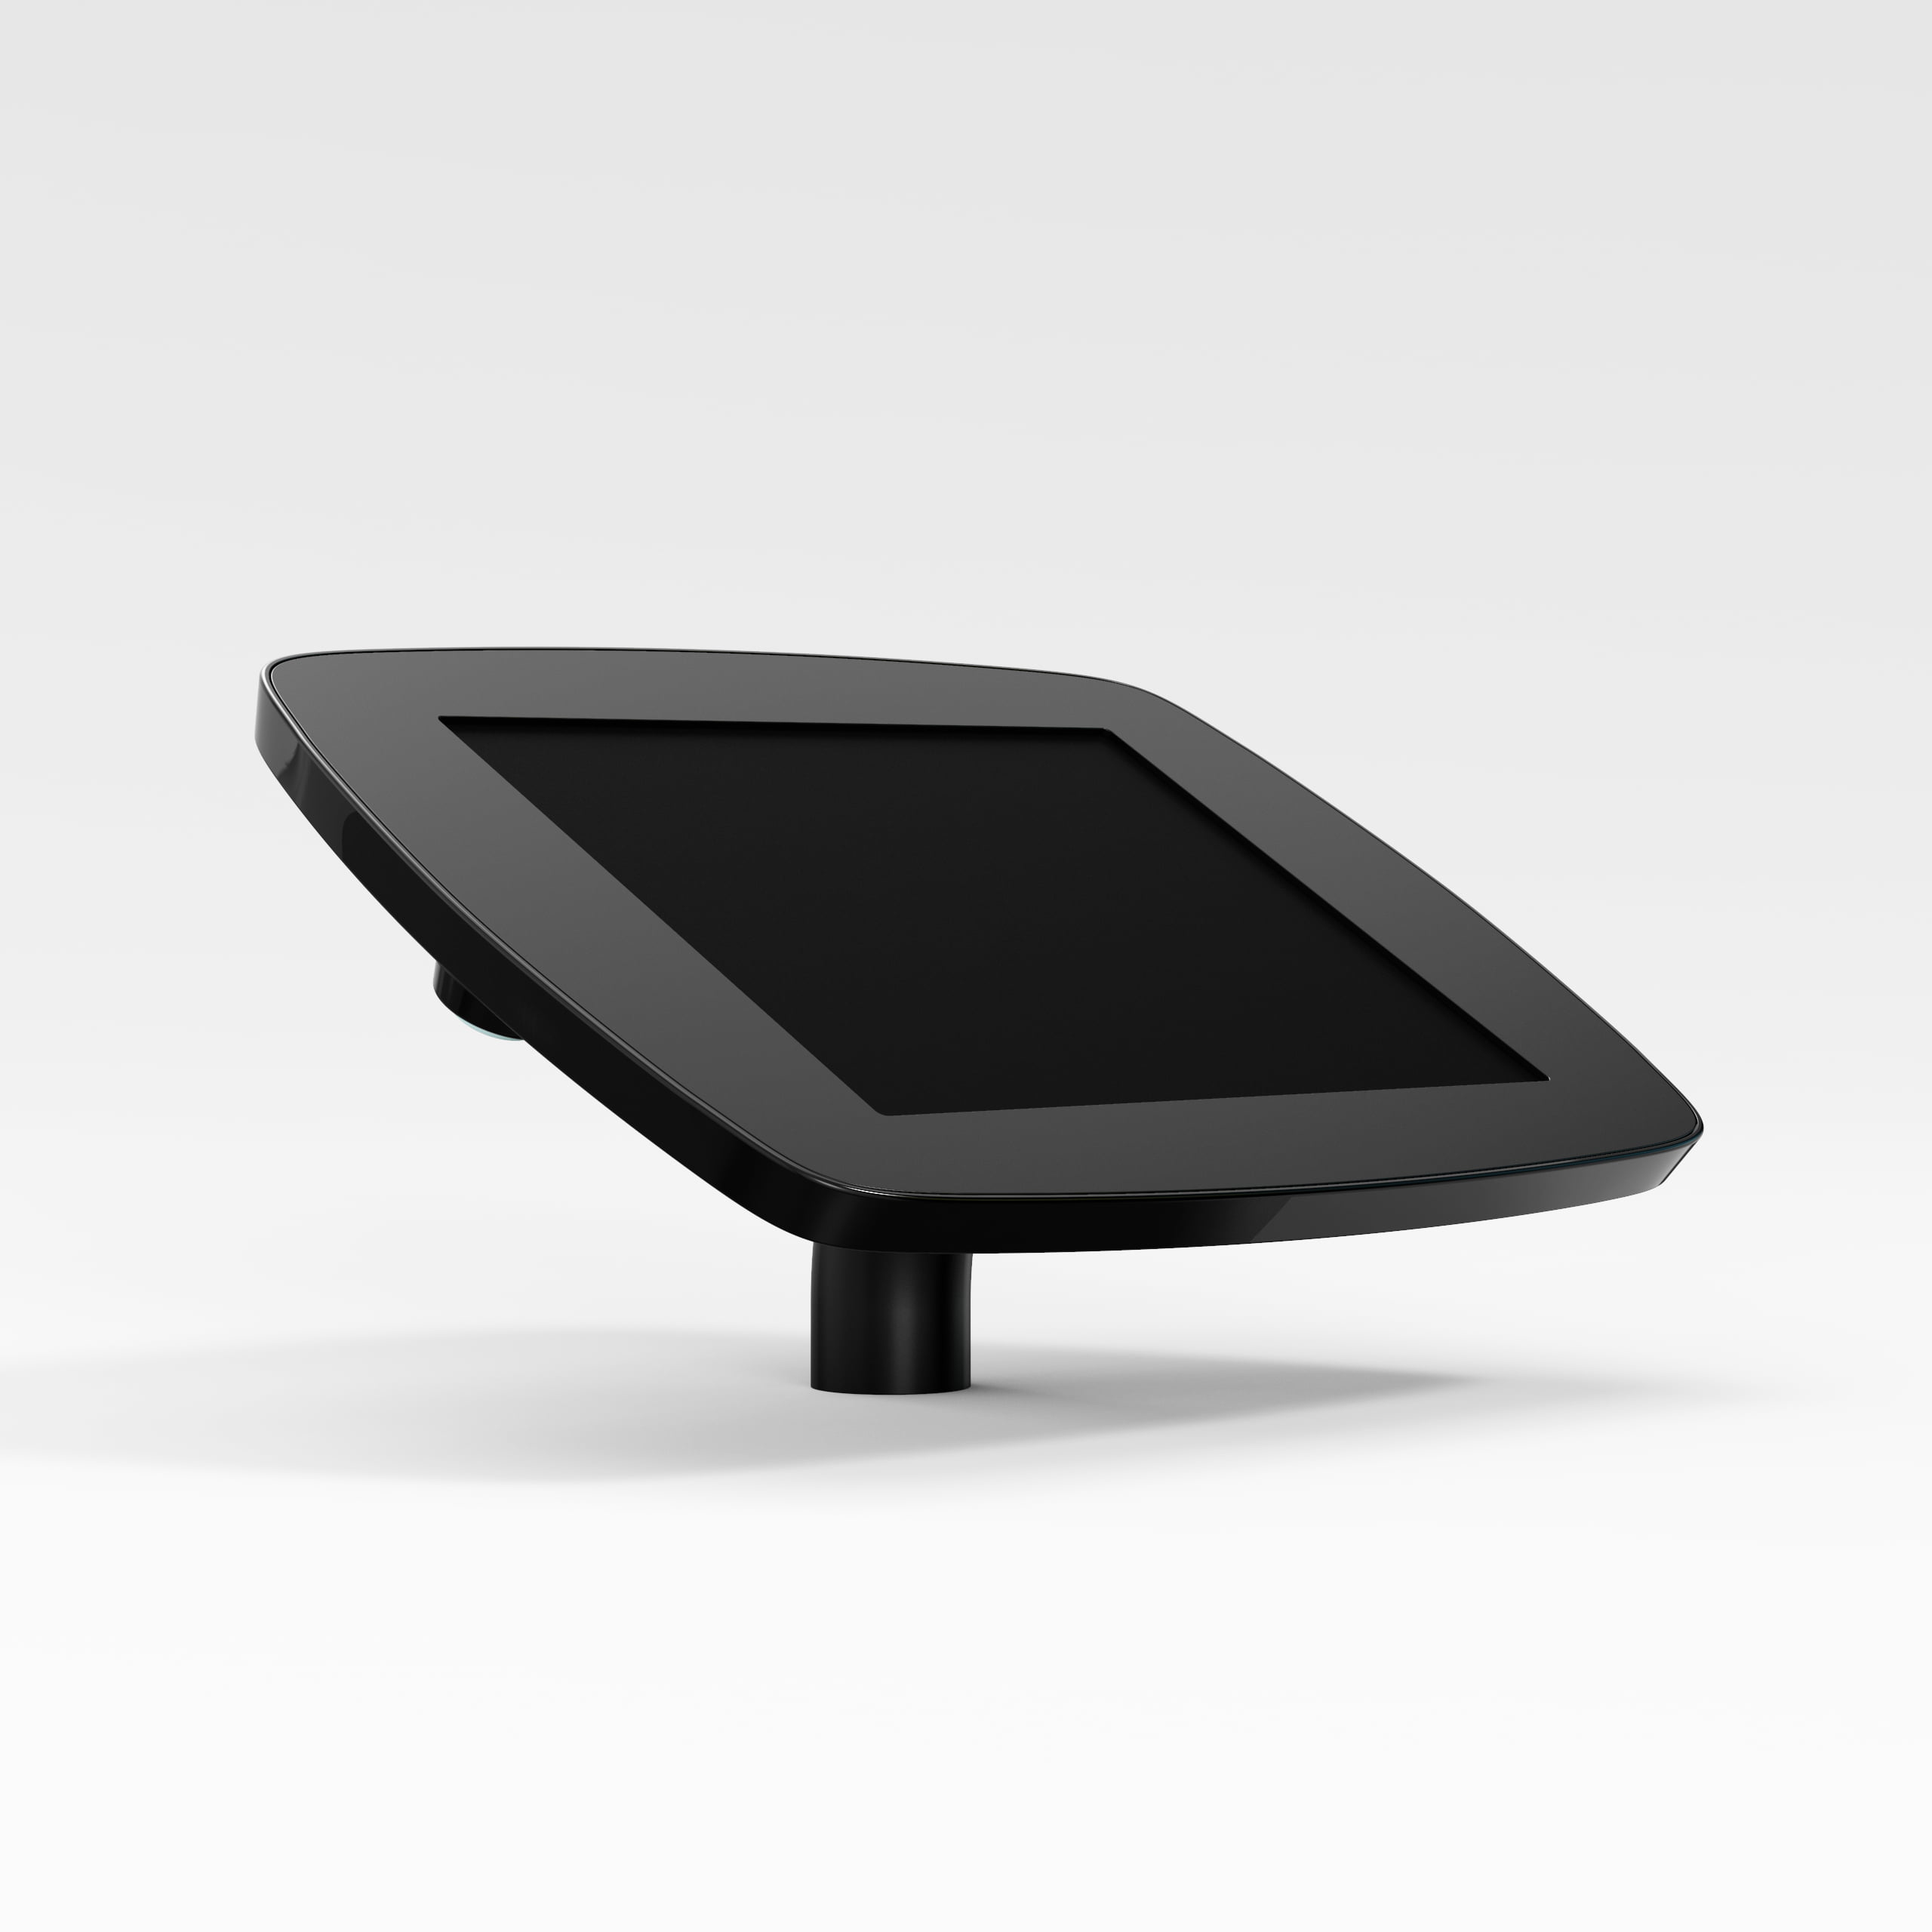 Bouncepad Desk supporto antifurto per tablet 24,4 cm [9.6] Nero (DESKBLKCLOSEDCAM/CLOSEDHOME TE1)